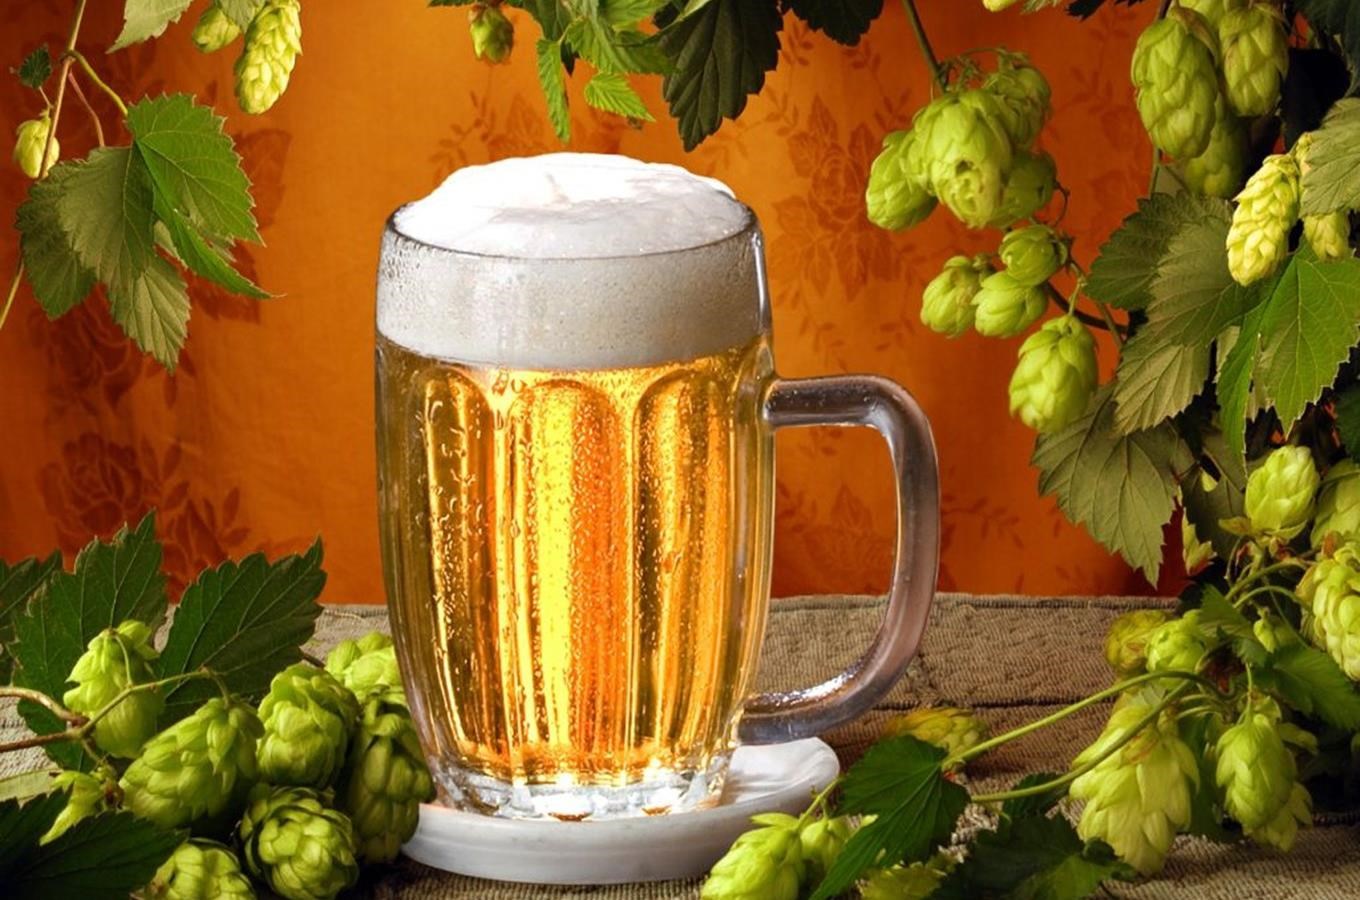 Pivní festival patří mezi nejlepší akce na světě